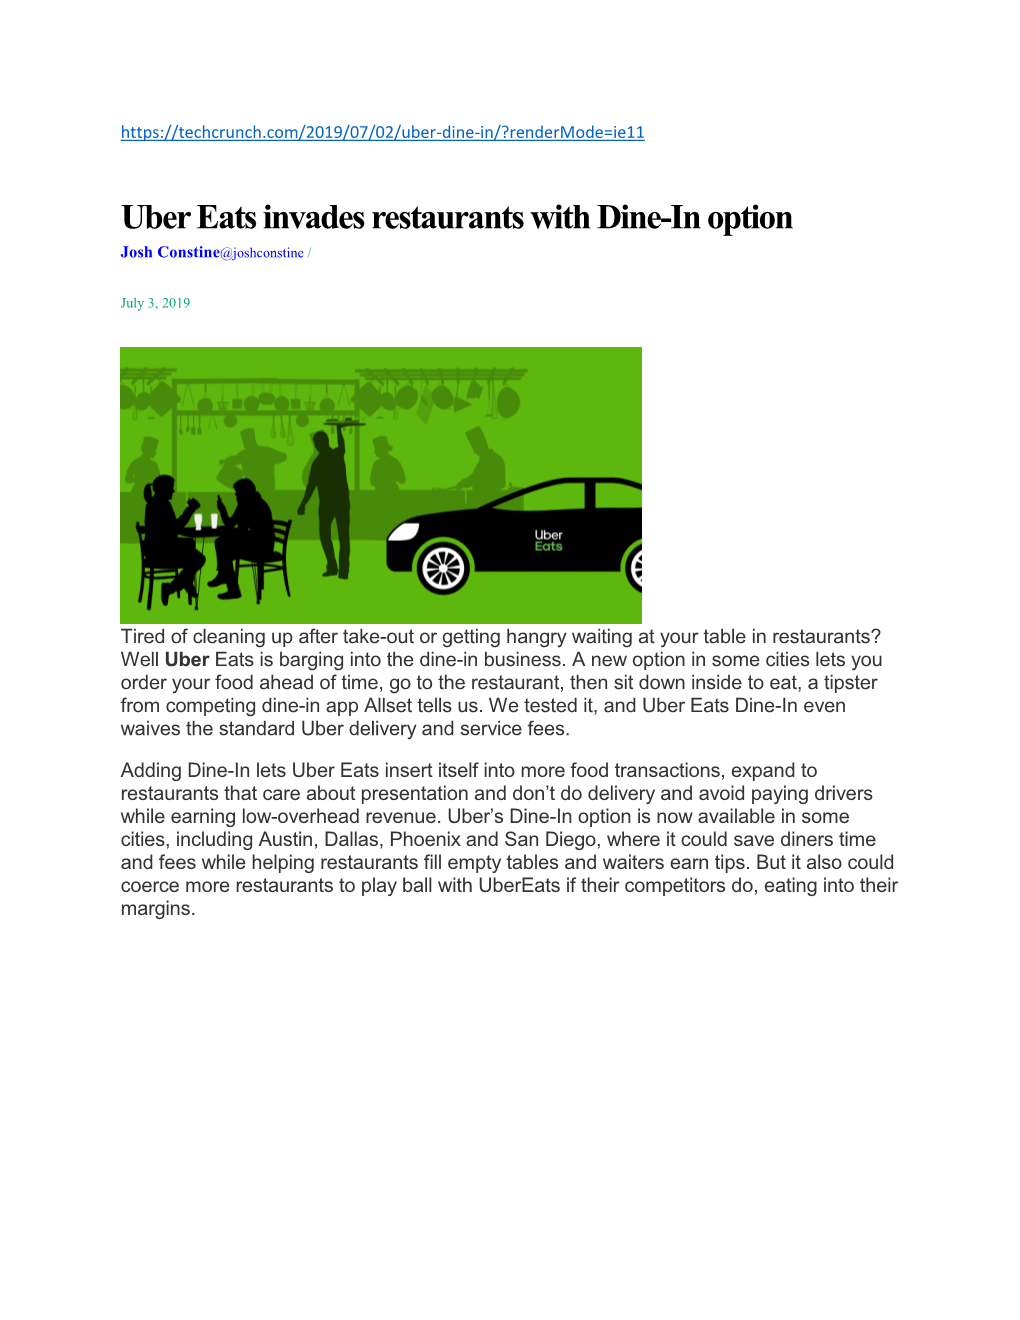 Uber Eats Invades Restaurants with Dine-In Option Josh Constine@Joshconstine